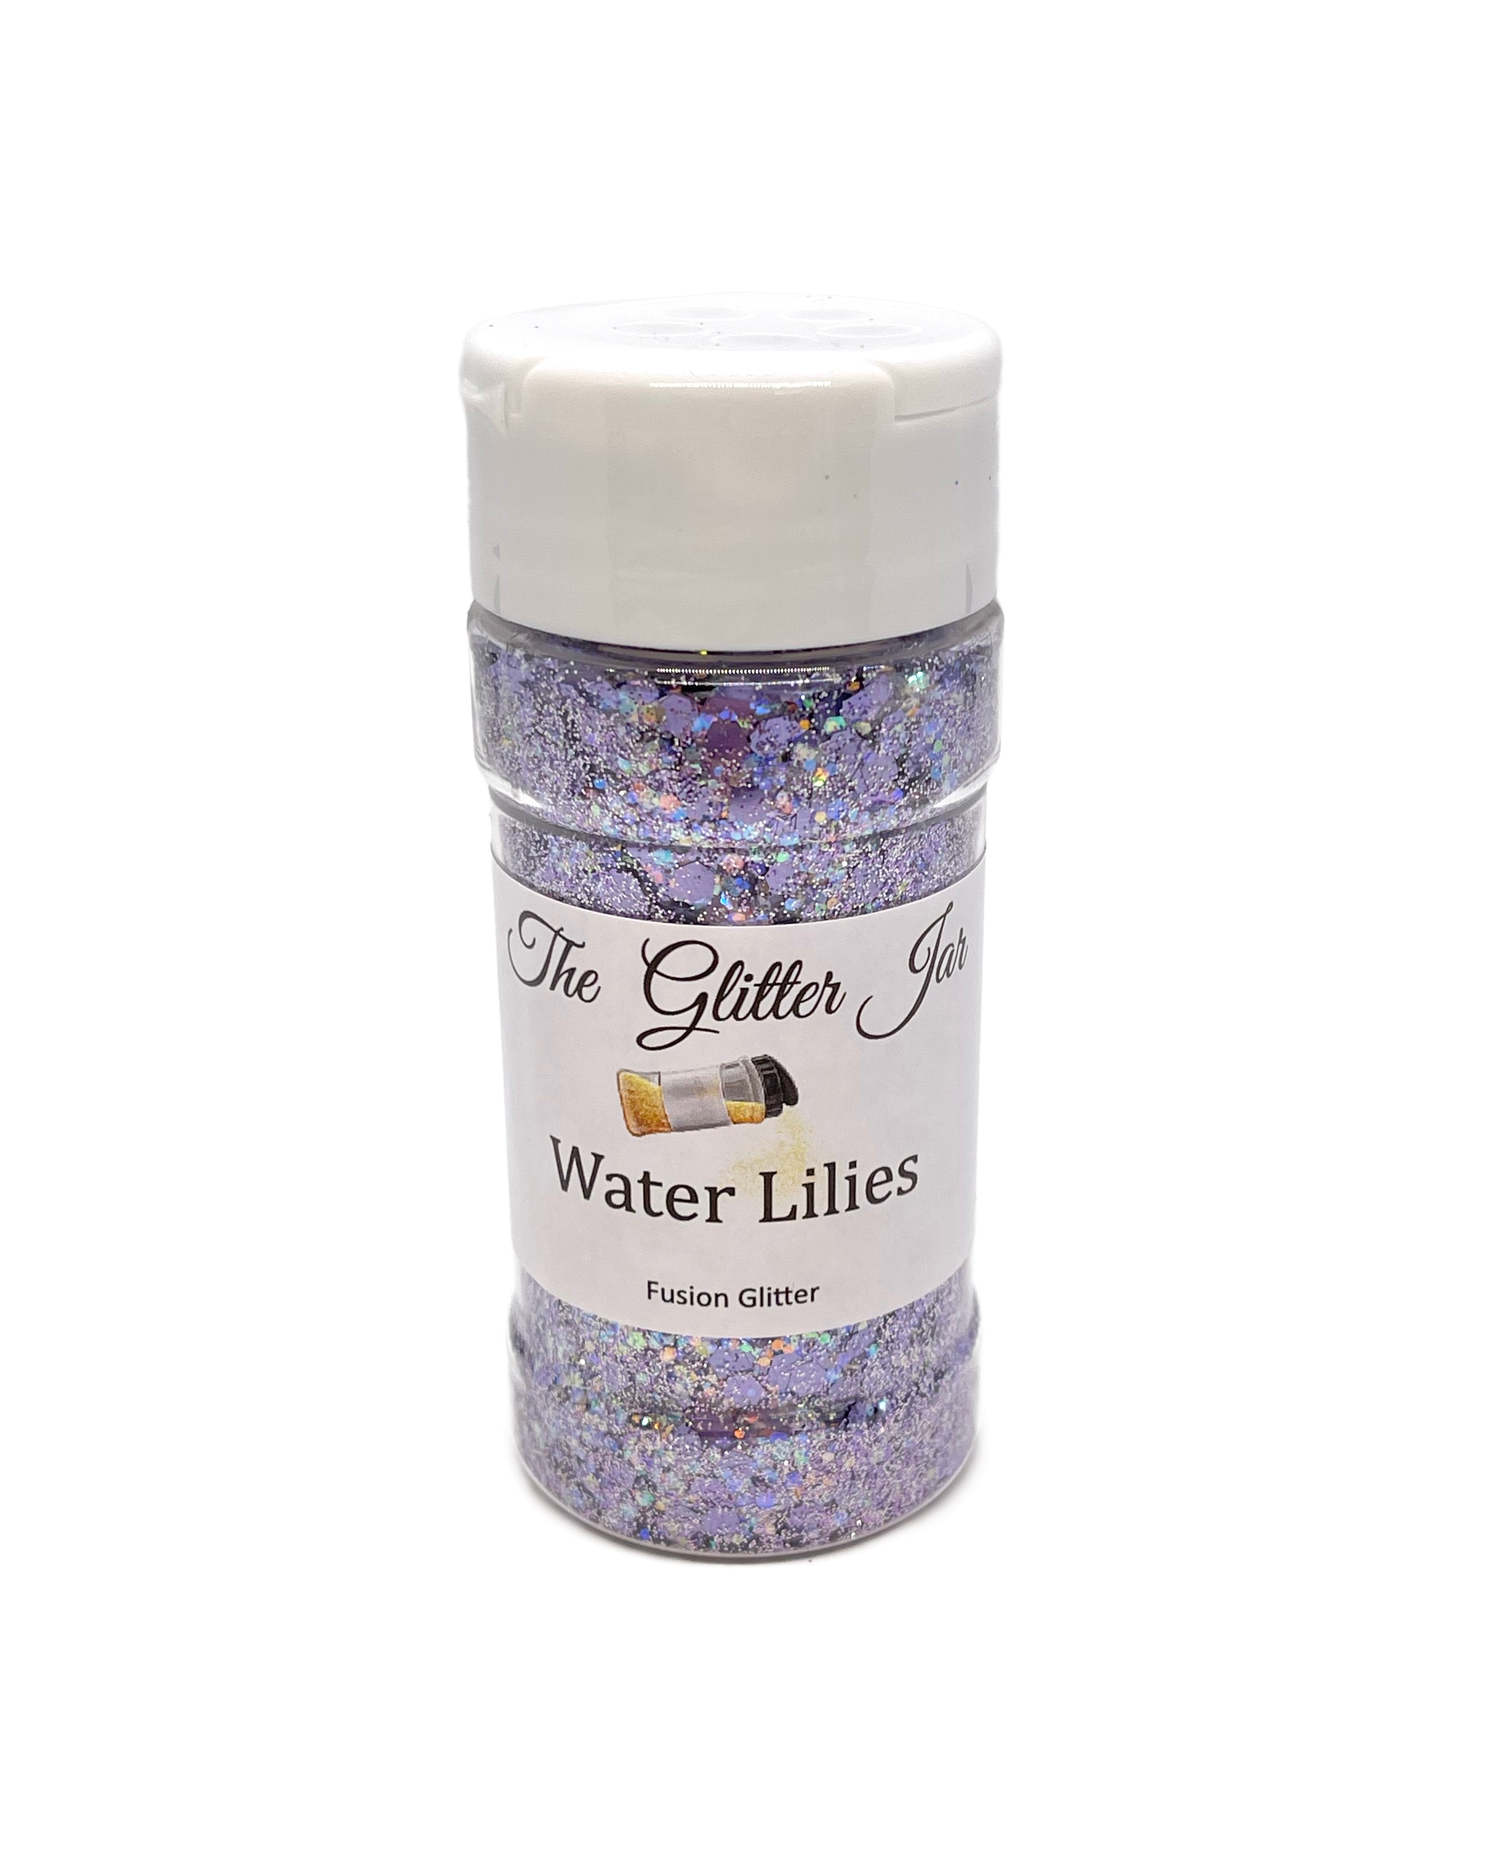 Water Lilies Fusion Glitter The Glitter Jar